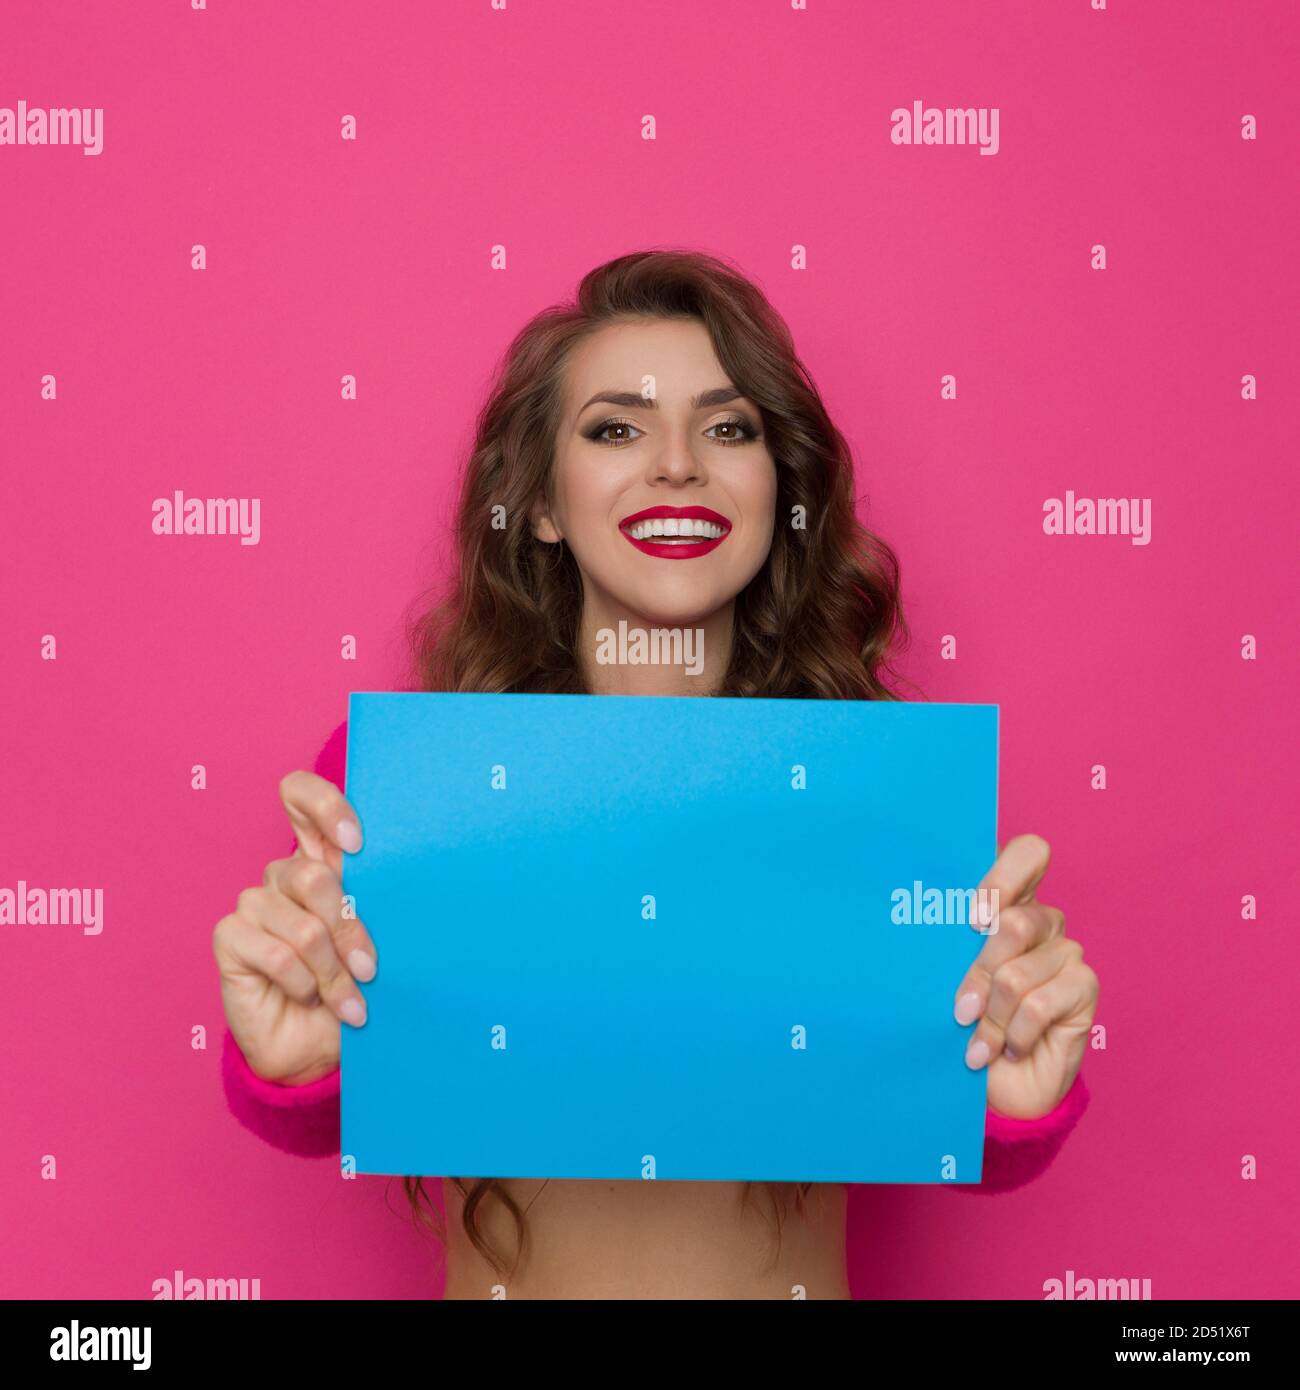 Une jeune femme souriante tient une feuille de papier bleue devant elle. Taille haute studio tourné sur fond rose. Banque D'Images